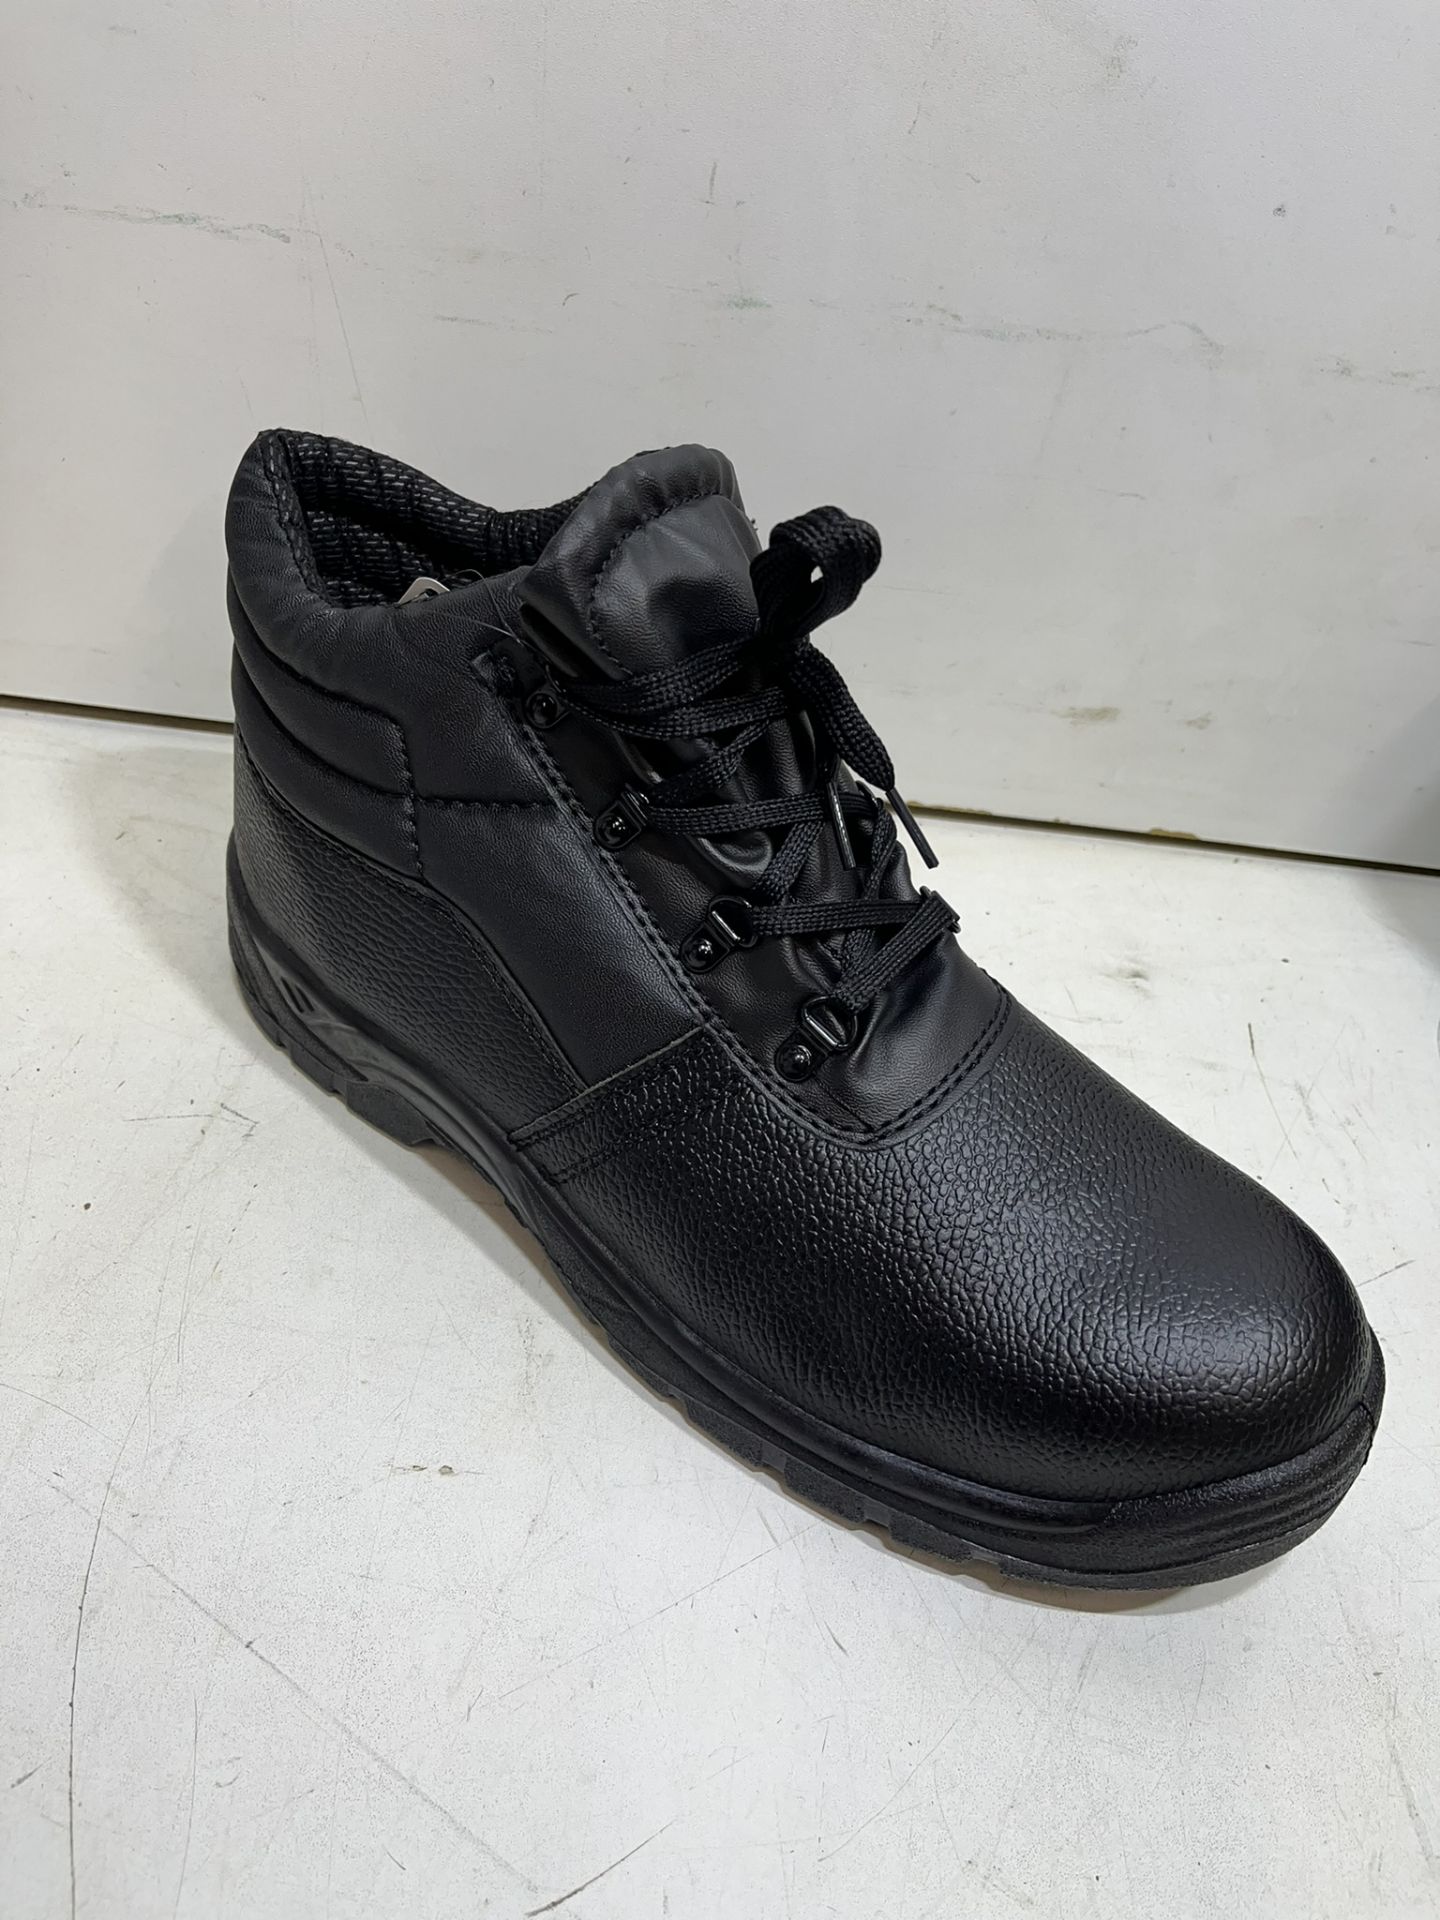 Chukka Black Steel Toe Cap Safety Boots | UK 12